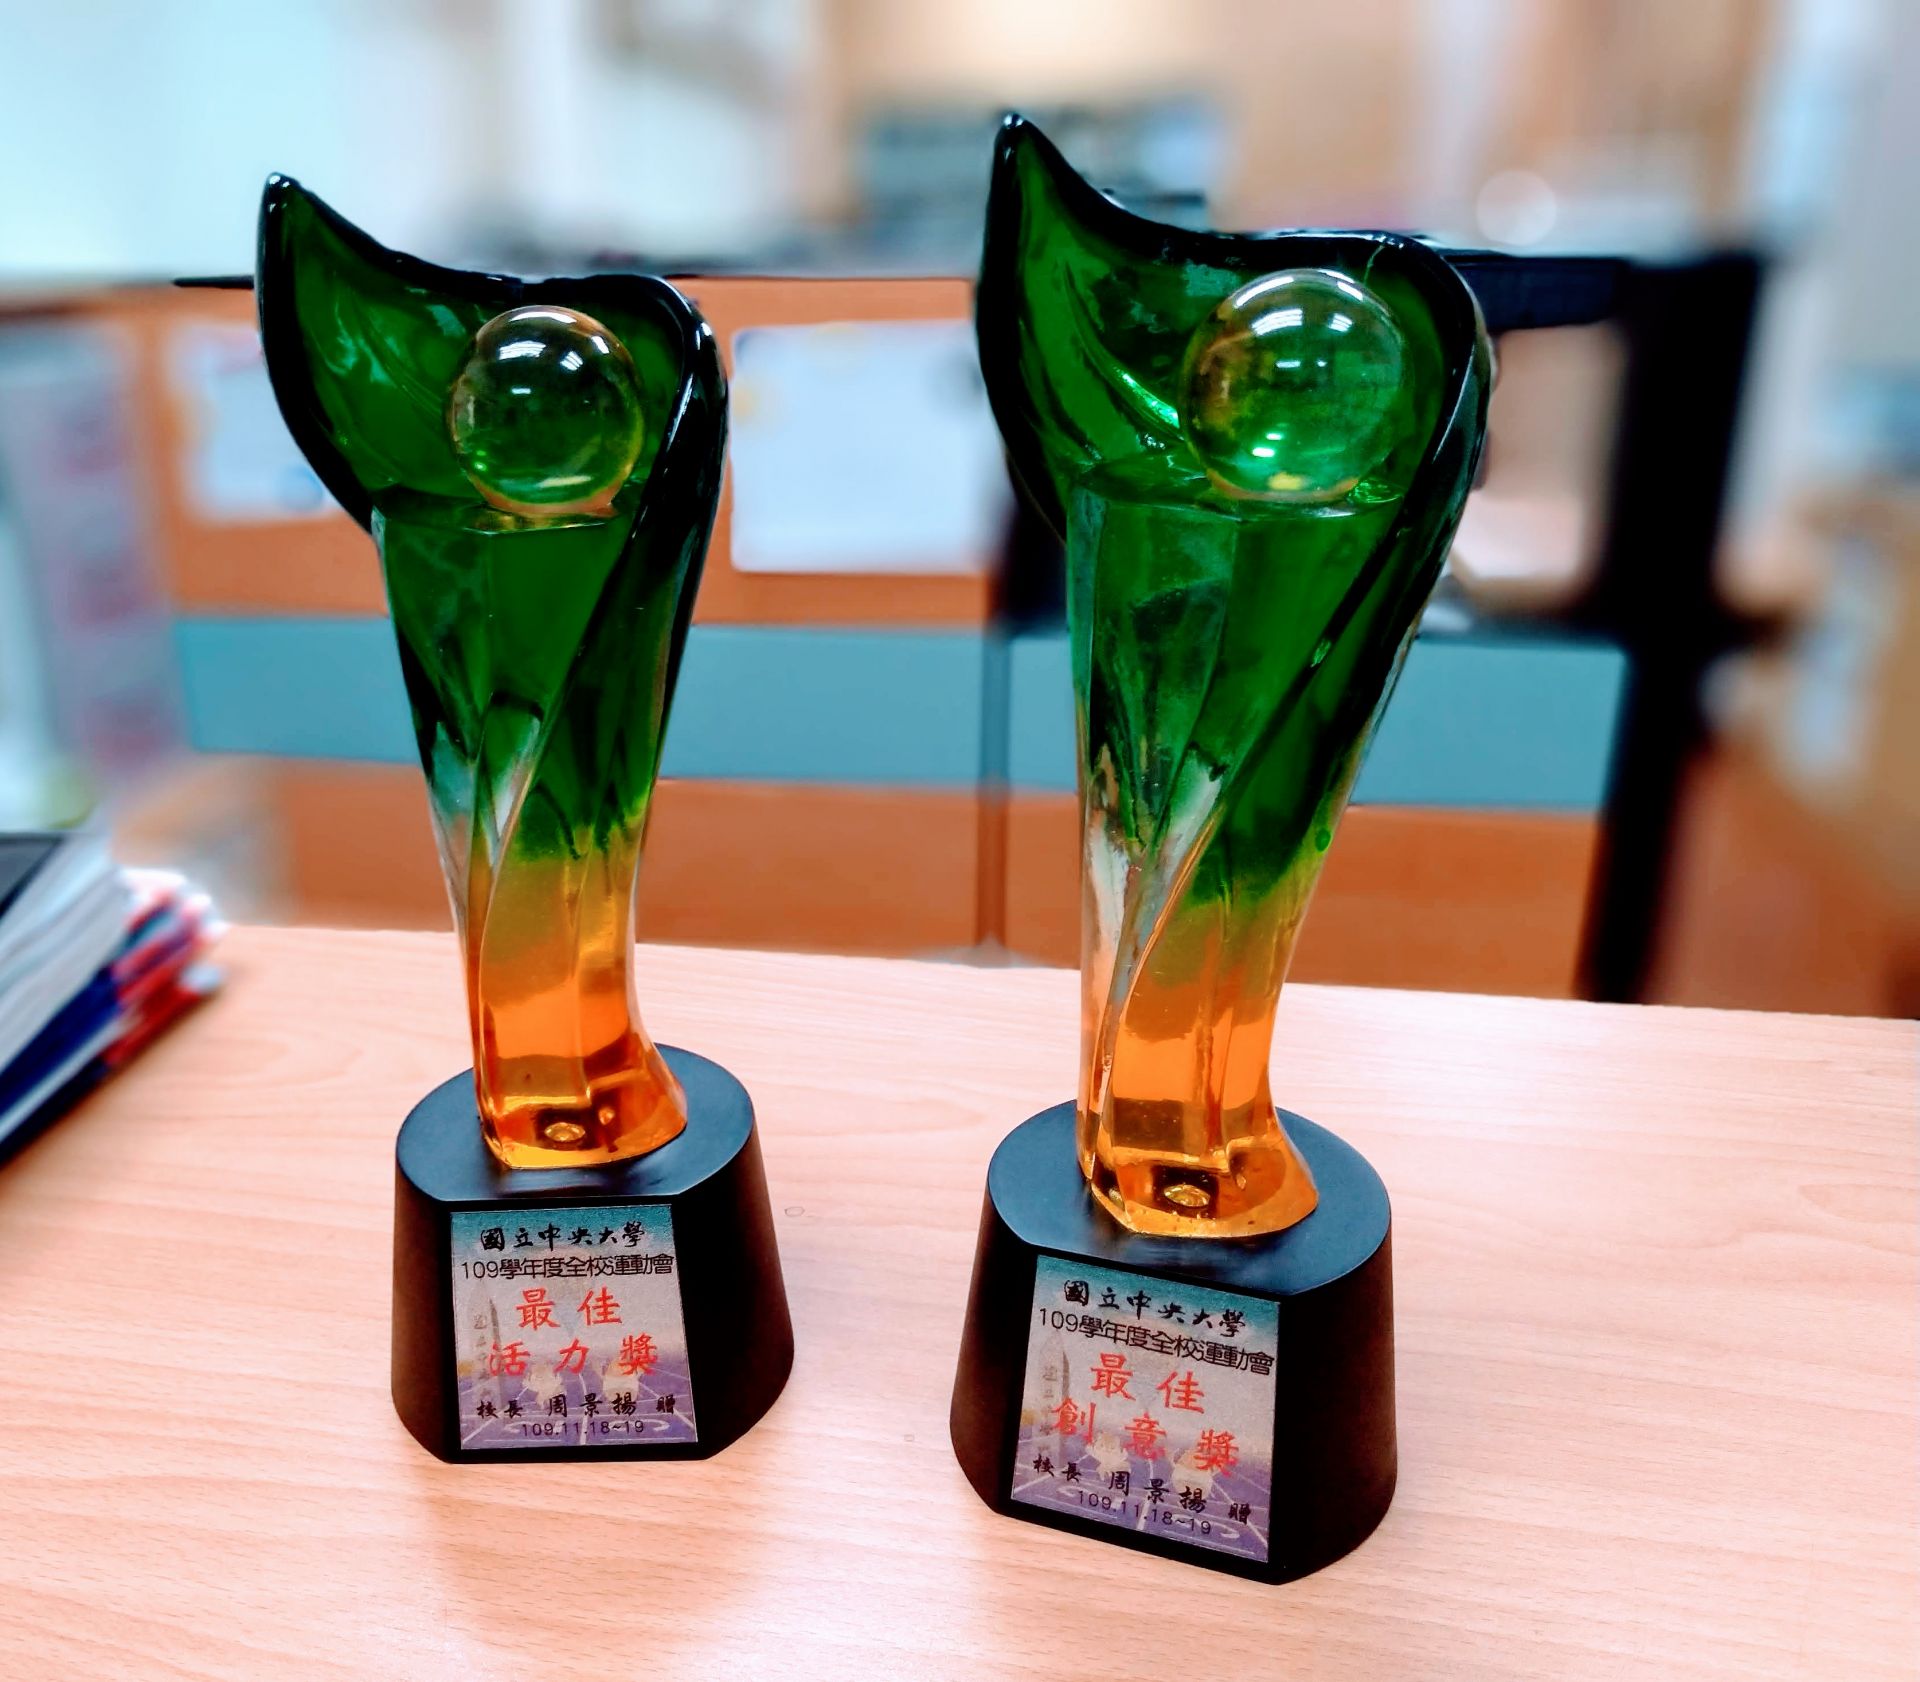 EMBA勇奪2020年全校運動會「最佳活力獎」與「最佳創意獎」